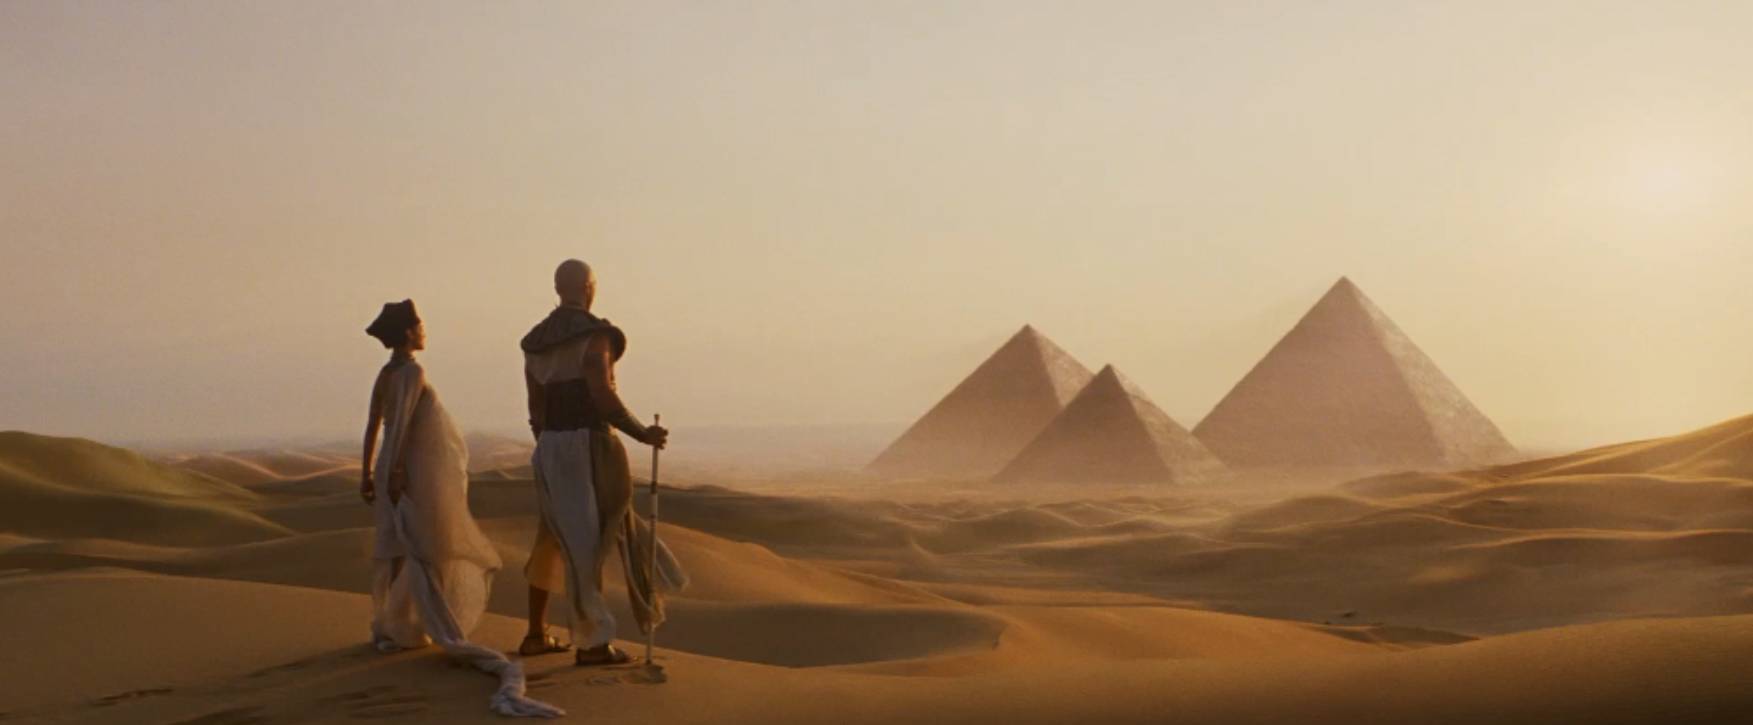 从埃及到伦敦,《新木乃伊》带你上天入地!